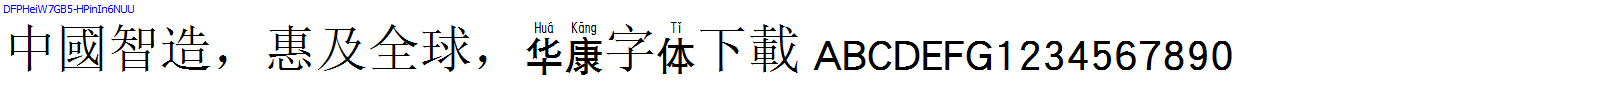 華康字體DFPHeiW7GB5-HPinIn6NUU.TTF